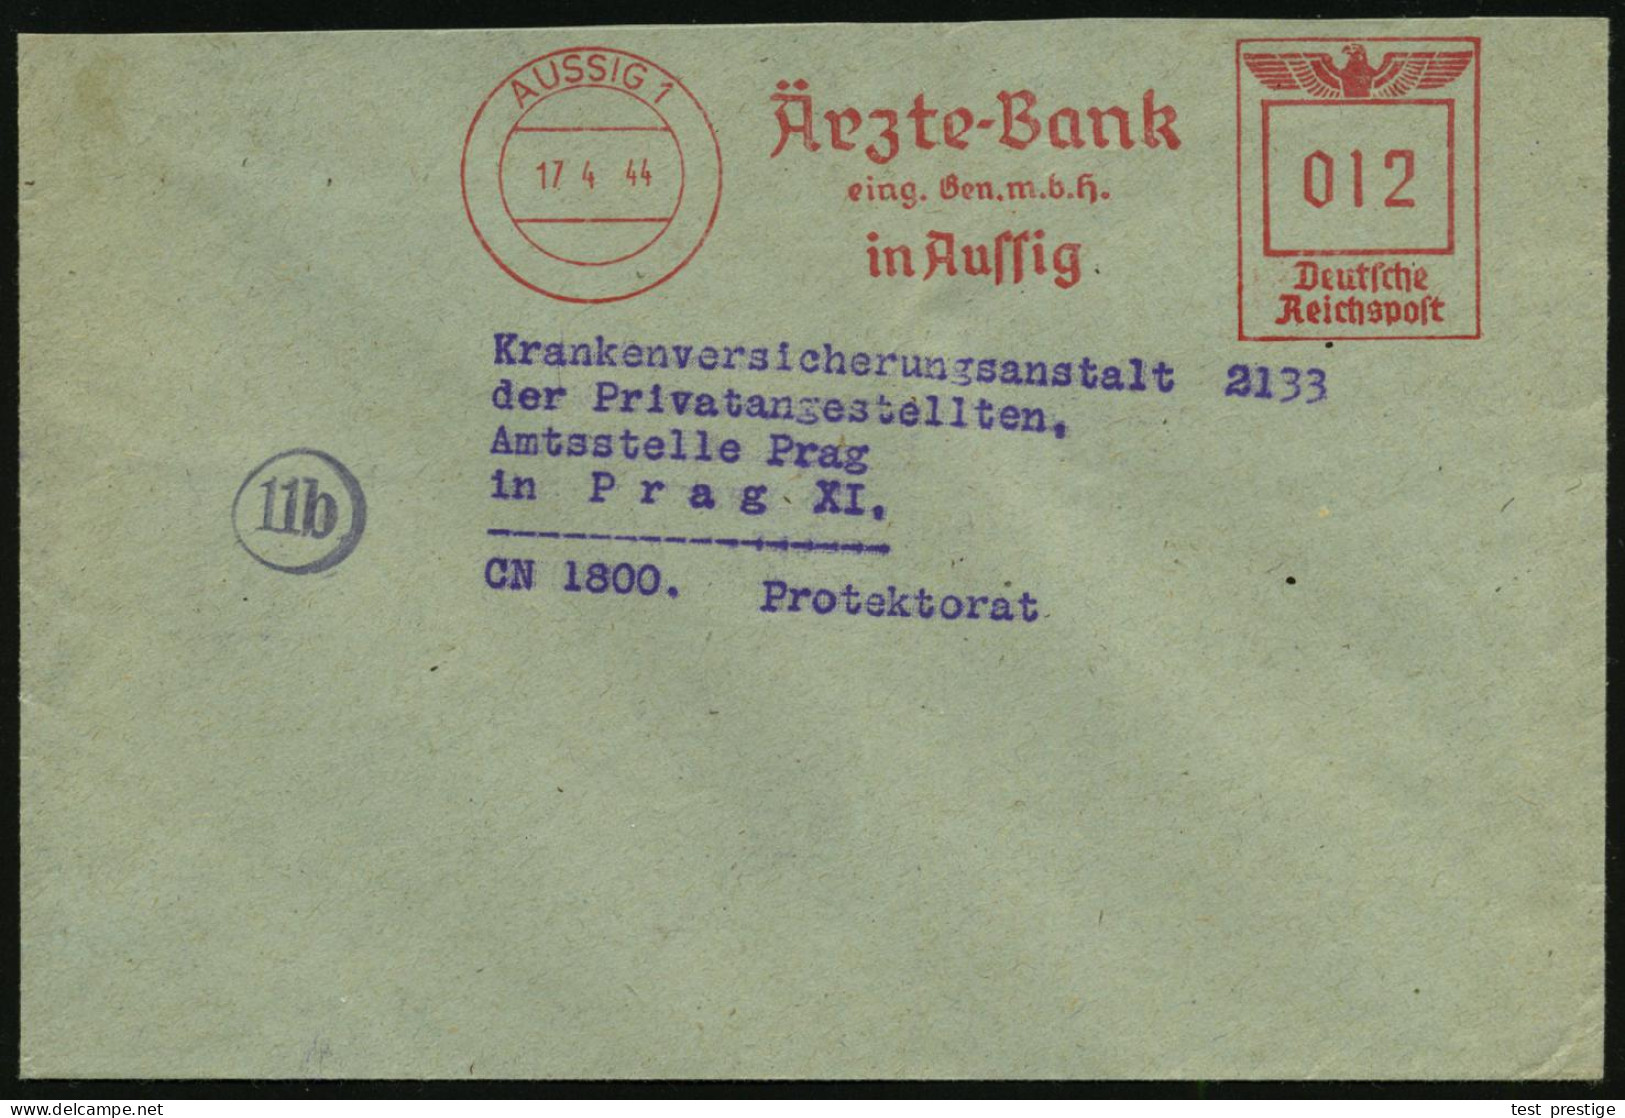 AUSSIG 1/ Ärzte-Bank/ Eing.Gen.m.b.H. 1944 (17.4.) AFS 012 Pf. Inl.-Tarif N. Prag (Böhmen & Mähren = Besetzte CSR), Klar - Medicina